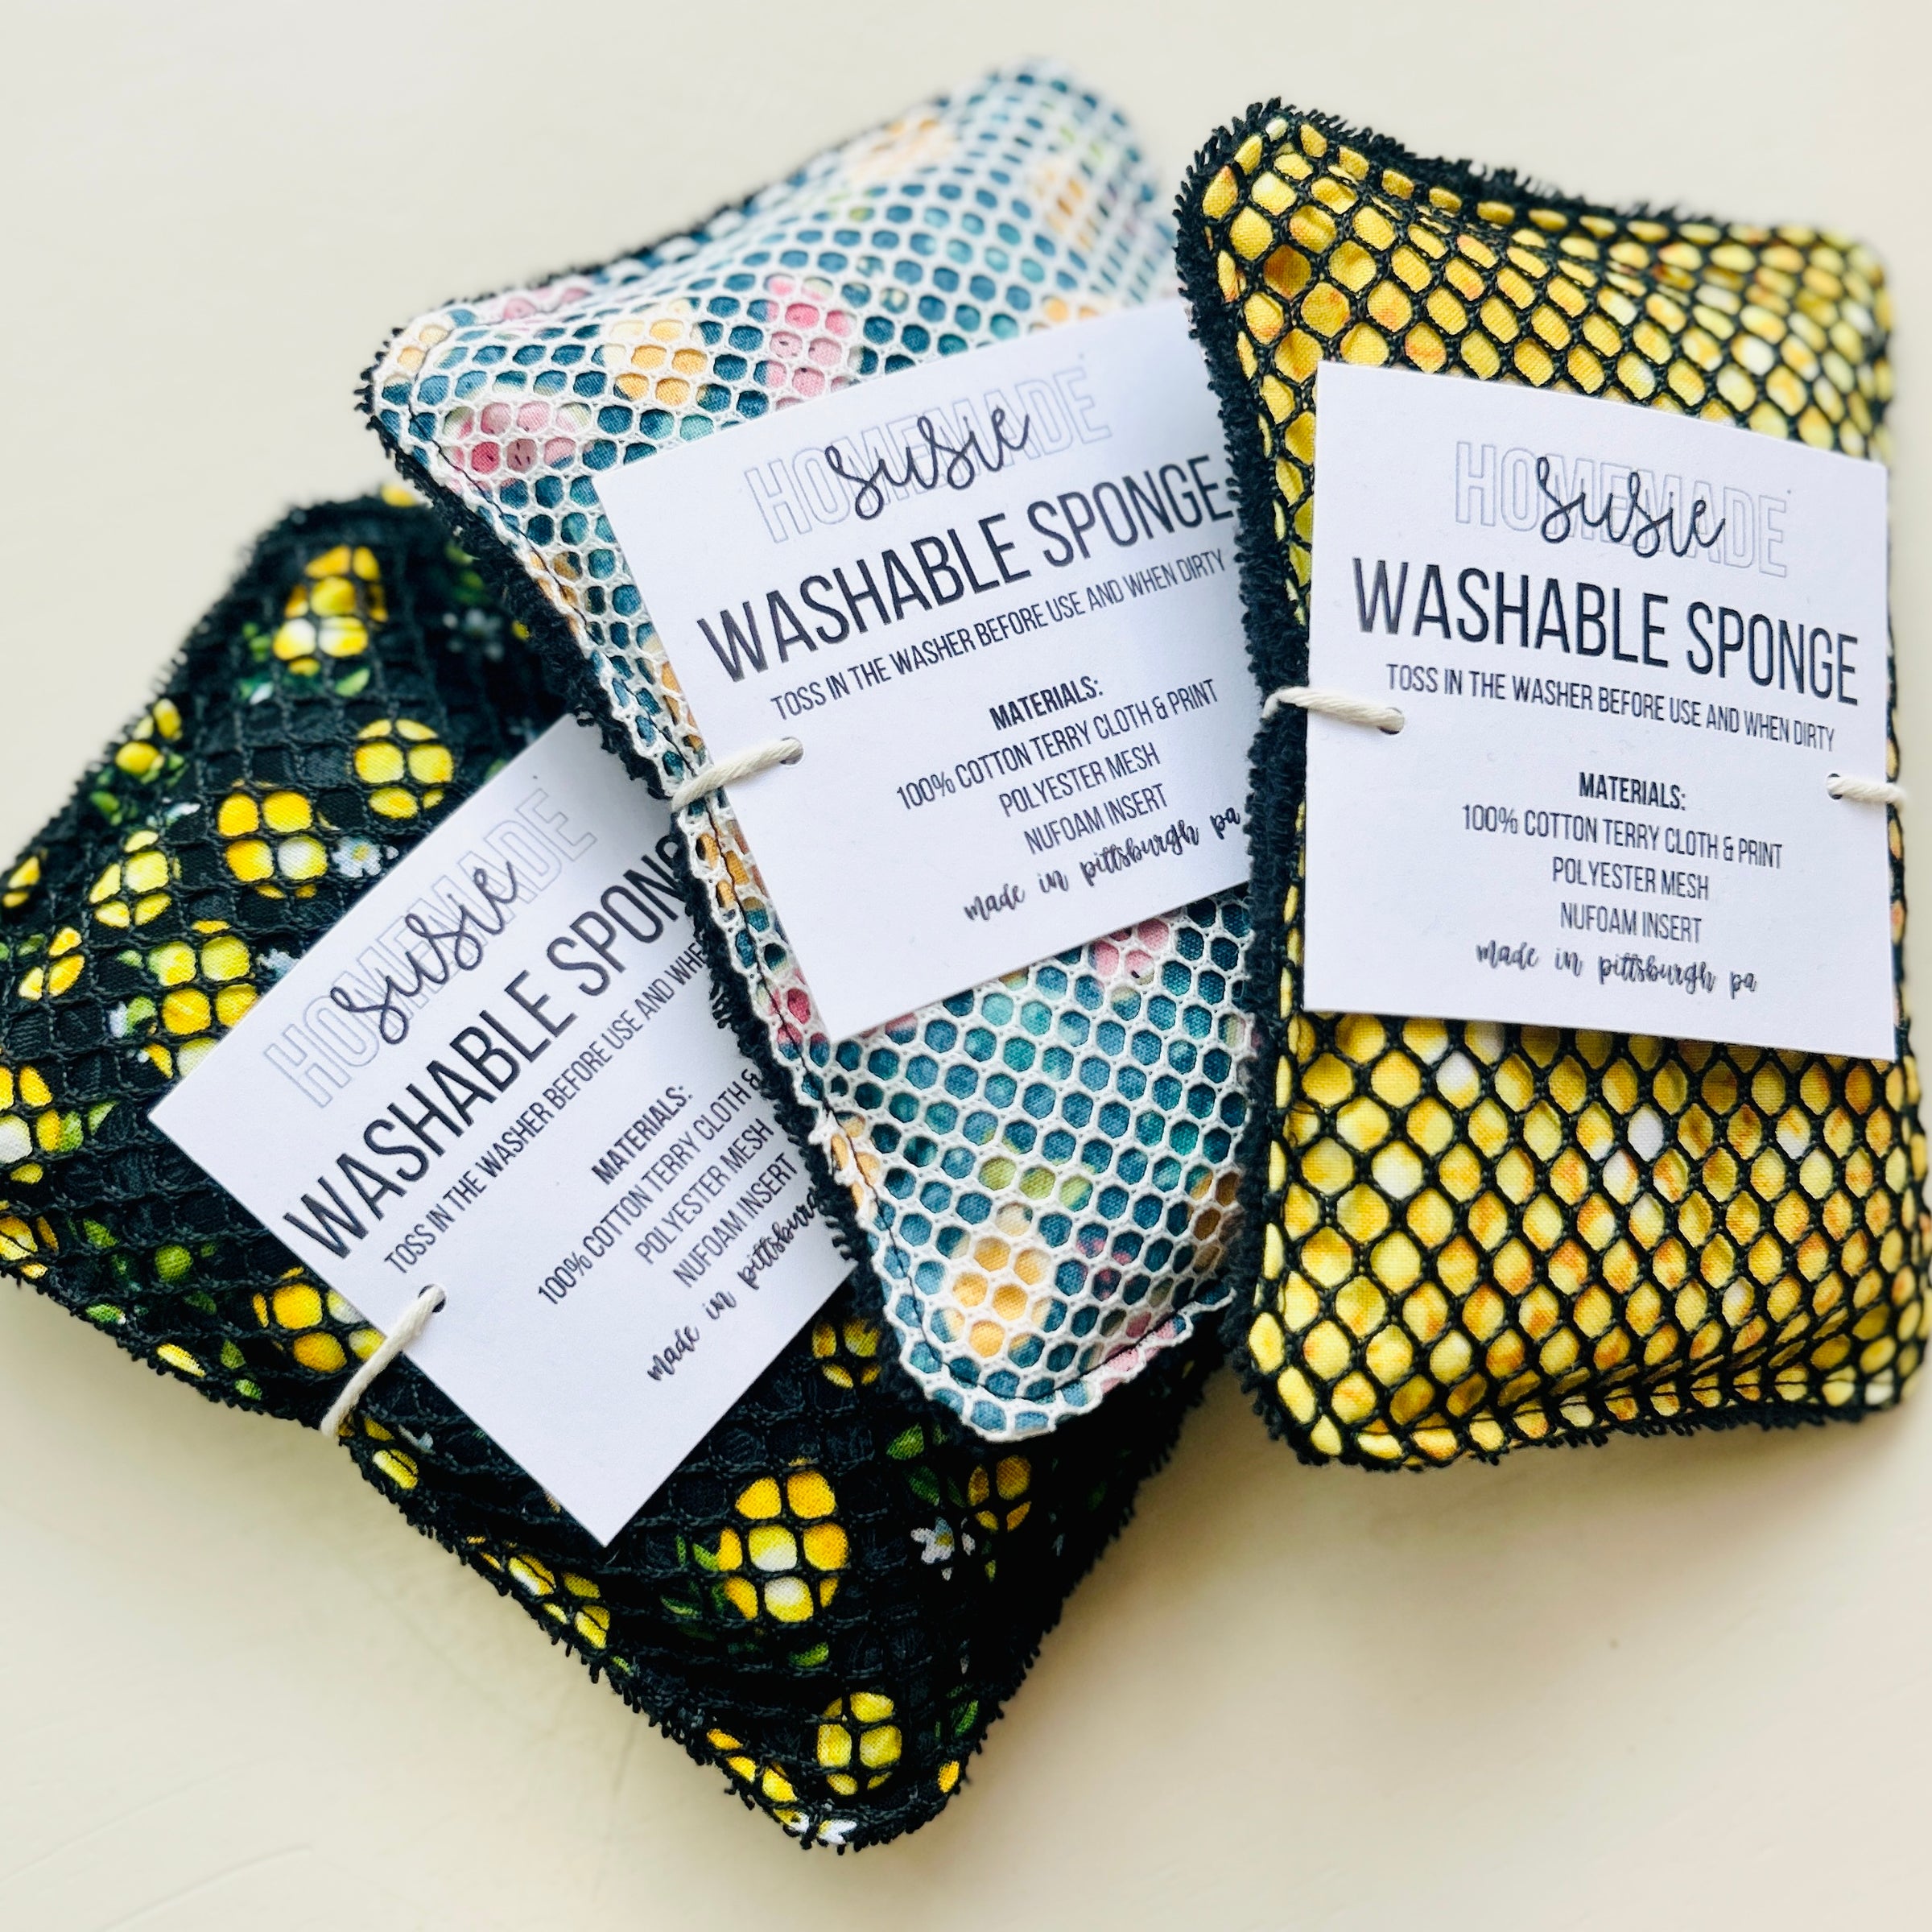 Washable & Reusable Sponge